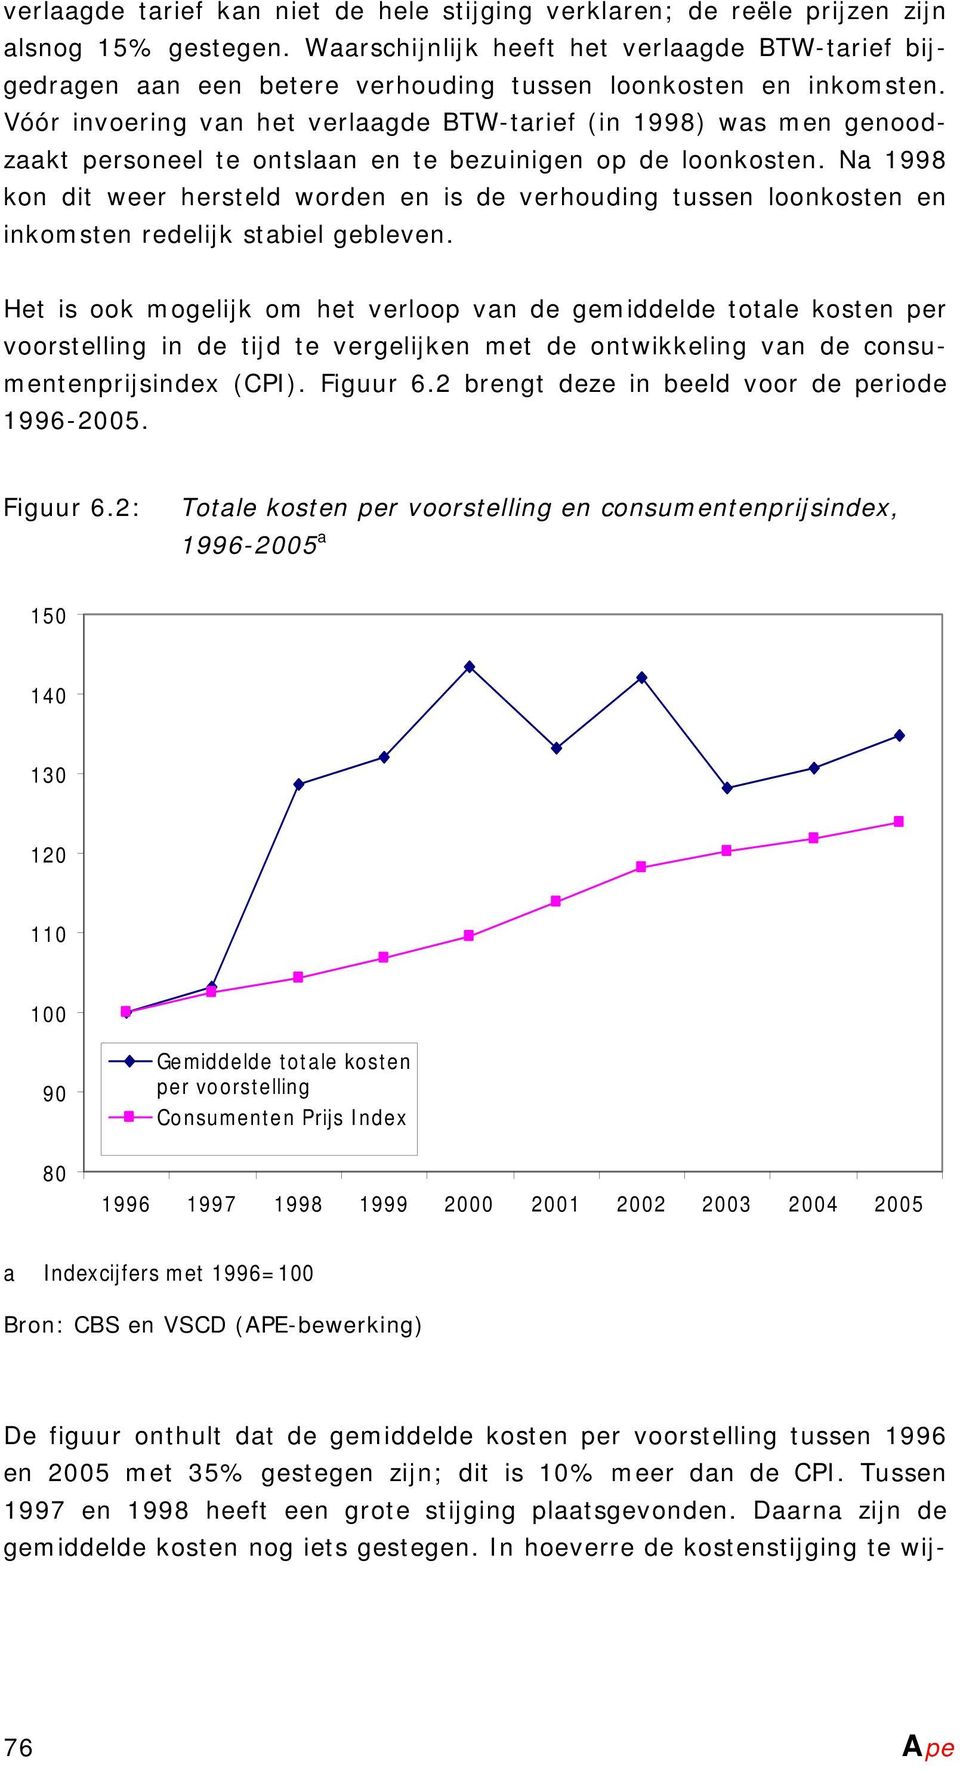 Vóór invoering van het verlaagde BTW-tarief (in 1998) was men genoodzaakt personeel te ontslaan en te bezuinigen op de loonkosten.